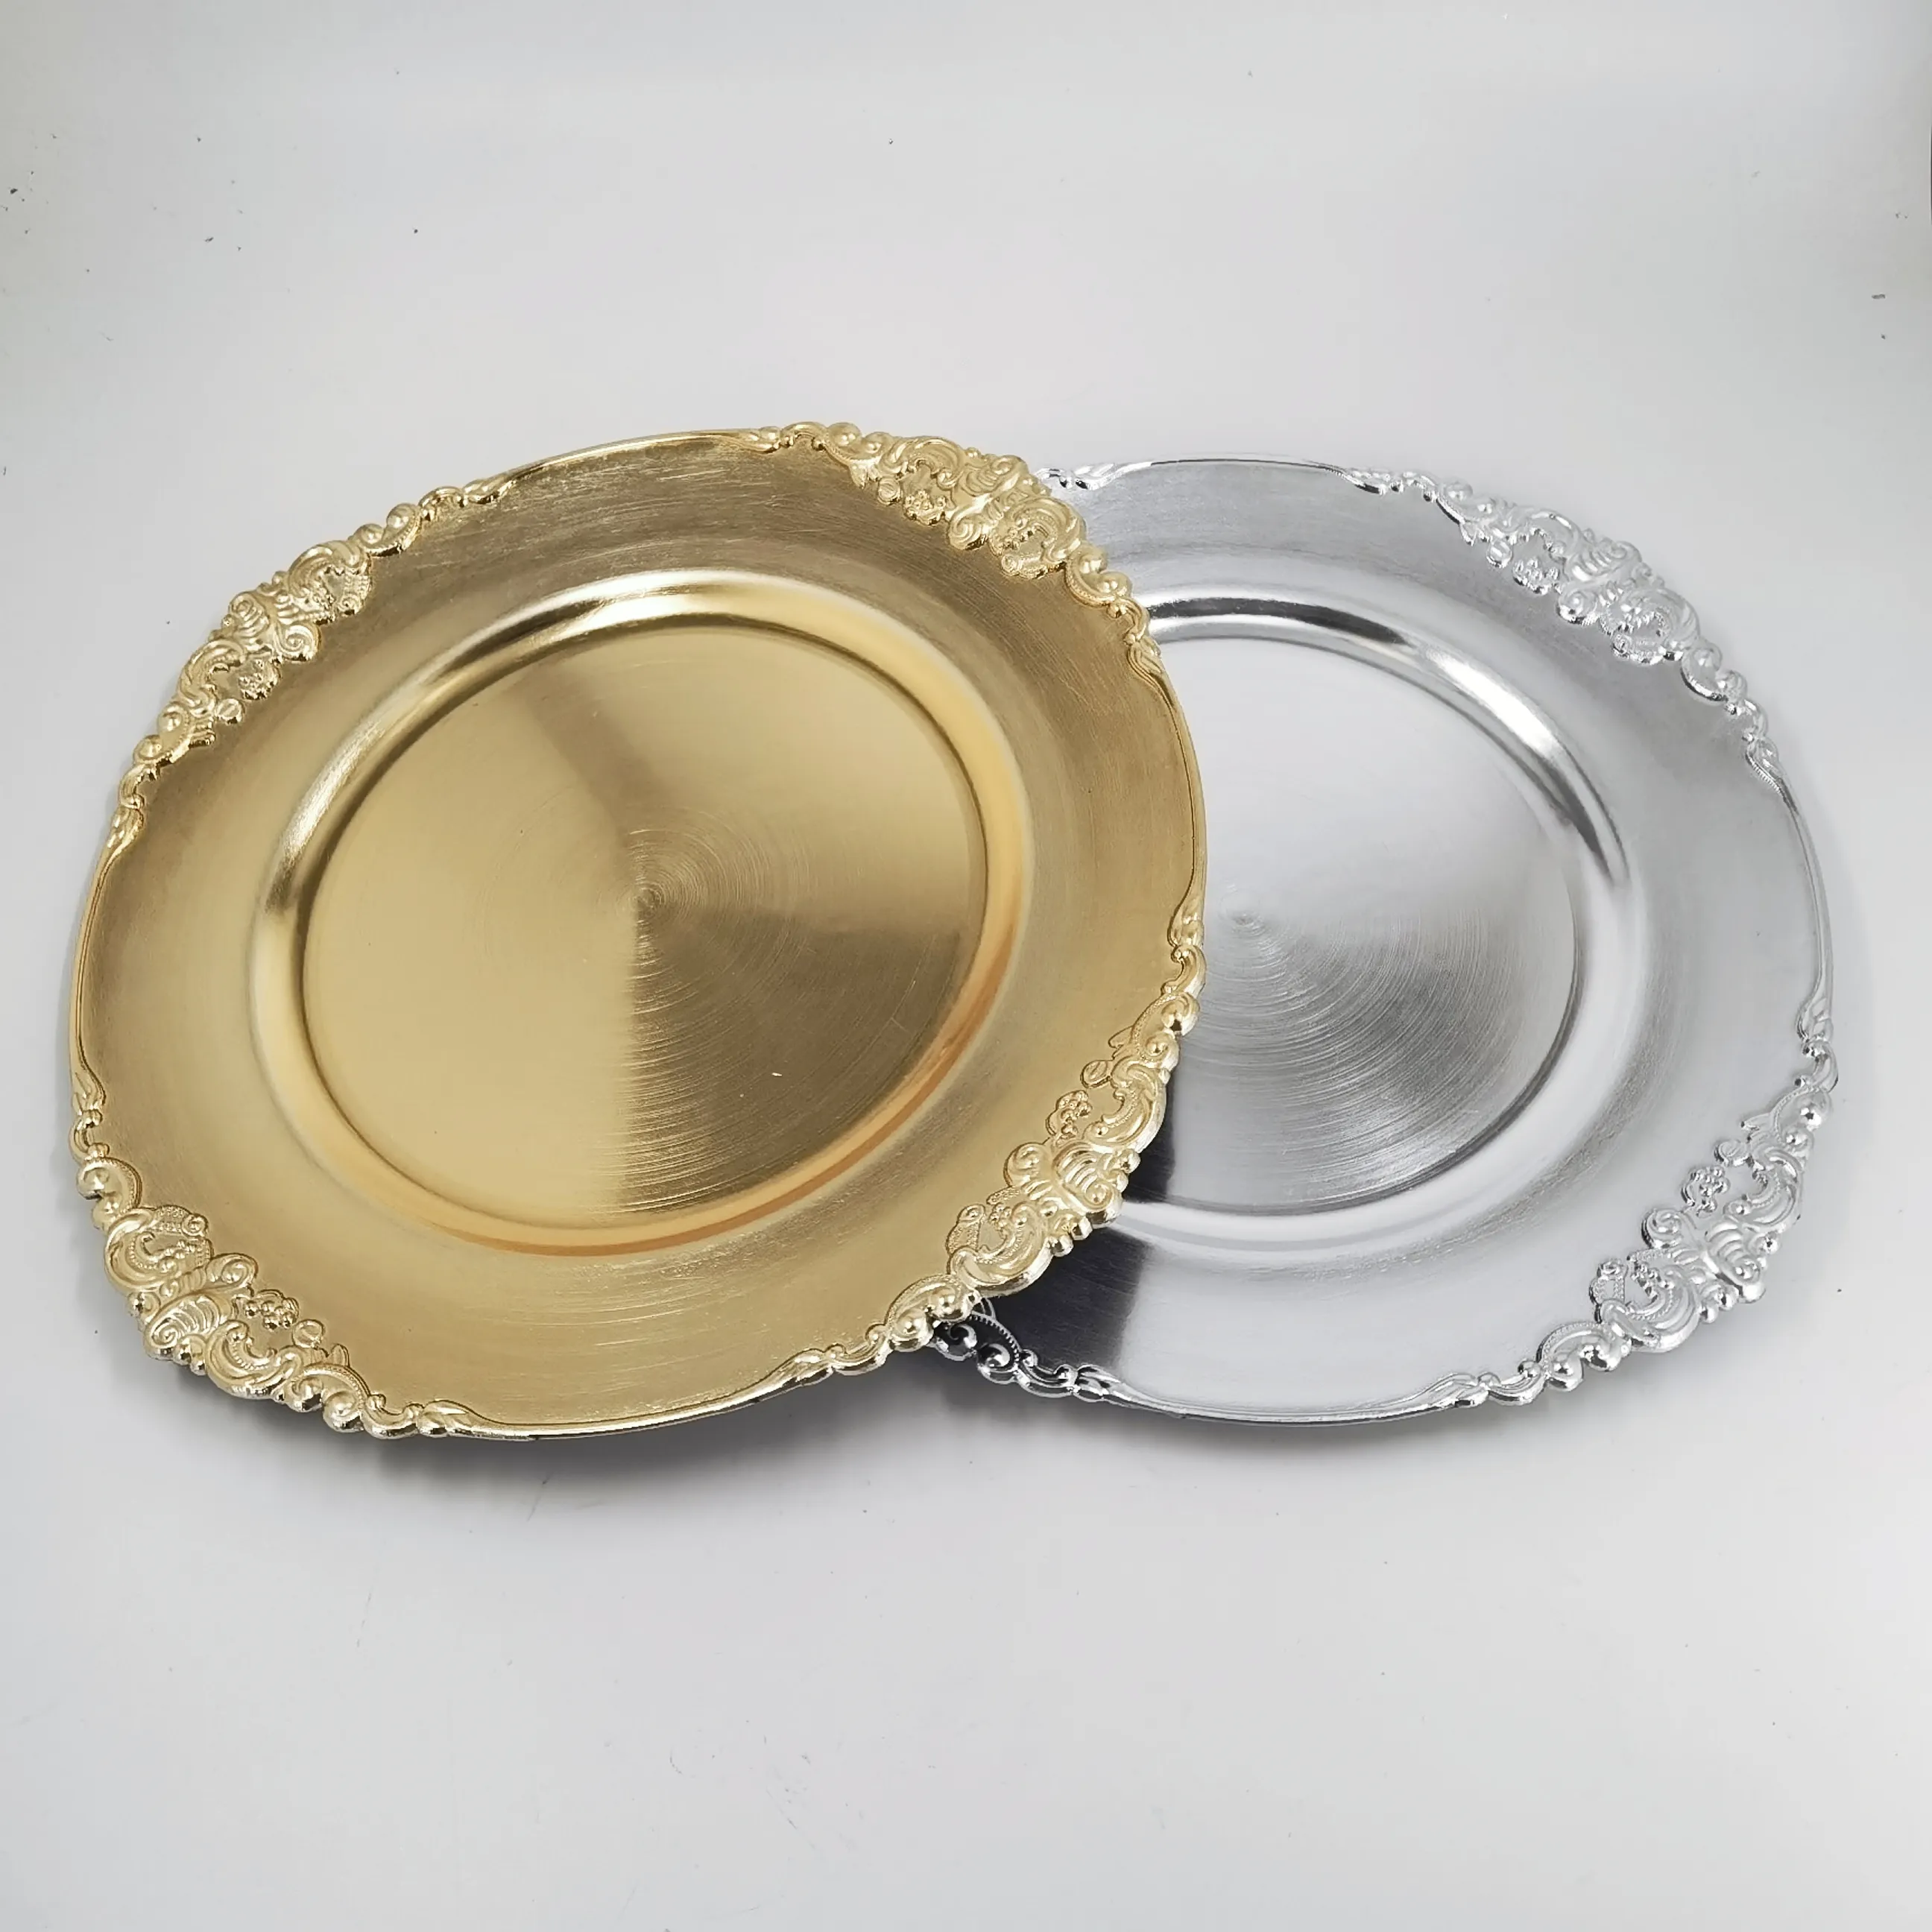 Оптовая продажа пластиковых подставок в стиле барокко, золотые и серебряные подставки под старину, свадебные тарелки для украшения ужина